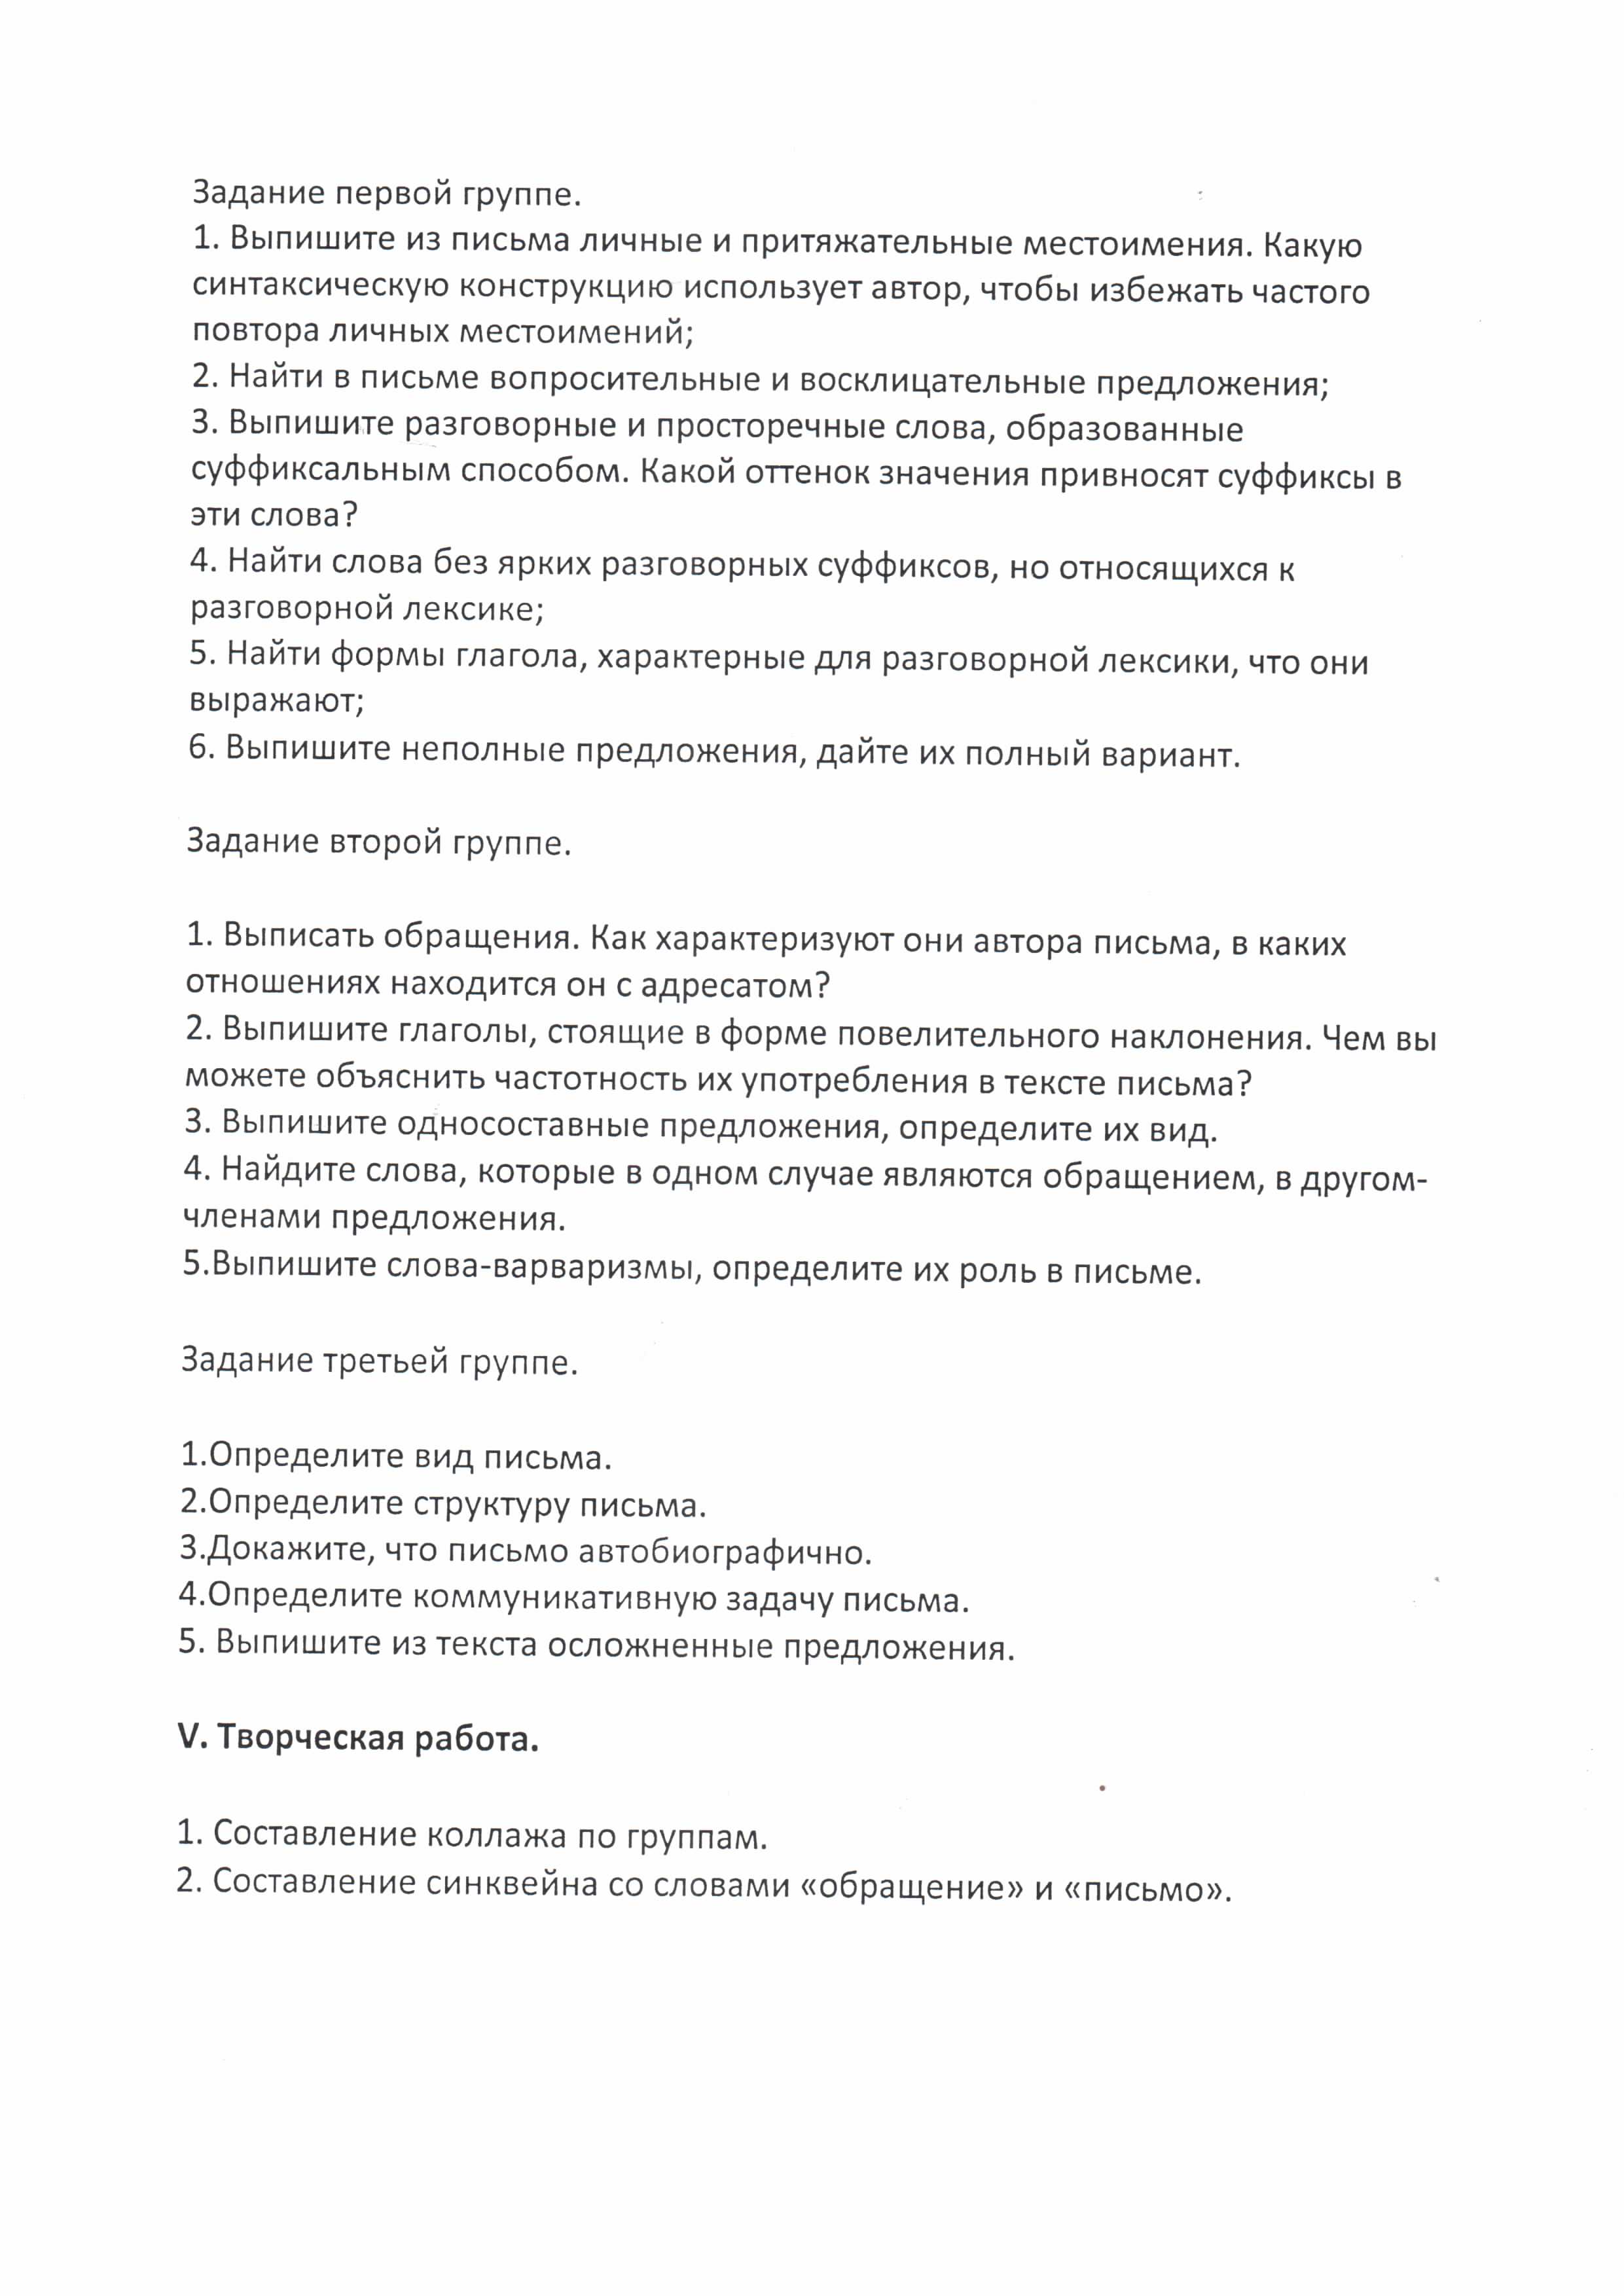 Разработка урока по русскому языку Обращения в письмах (8 класс)